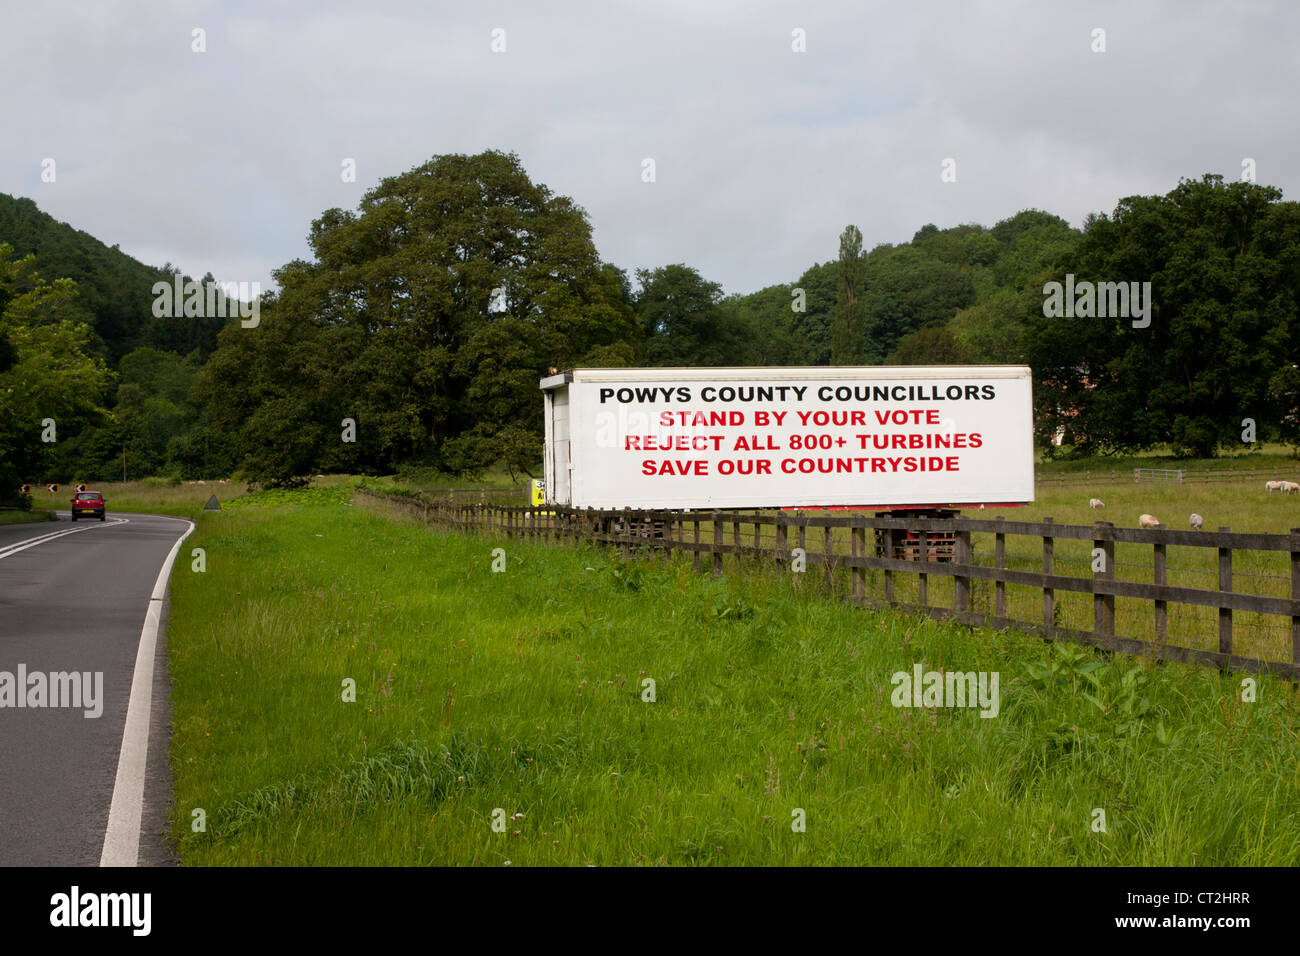 L'affiche en champ en route pour protester contre la propagation des fermes éoliennes en Powys près de Garthmyl Powys Pays de Galles UK Banque D'Images